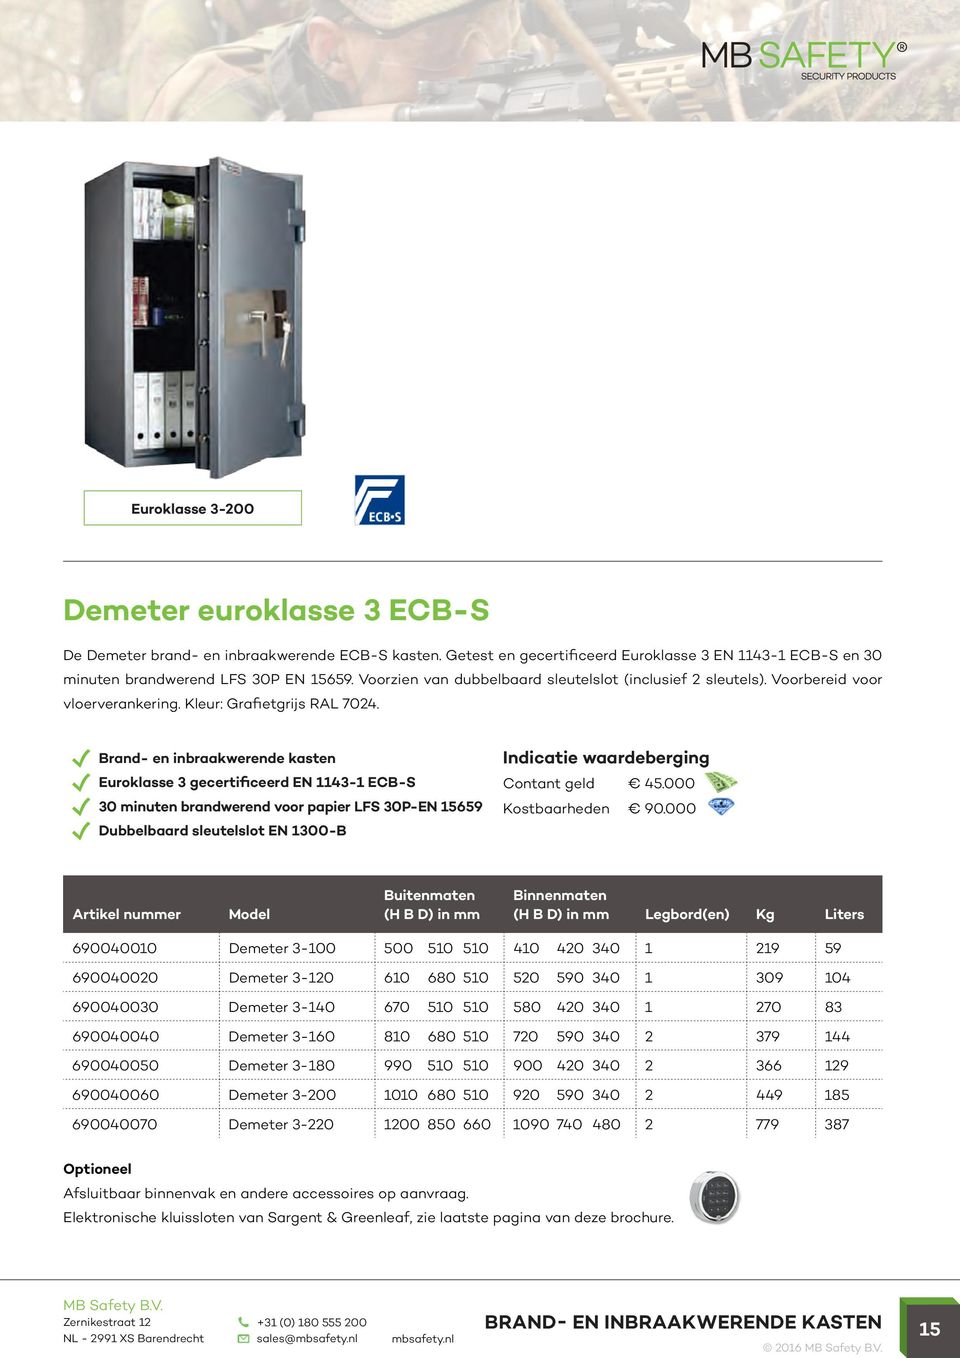 Euroklasse 3 gecertificeerd EN 1143-1 ECB-S 30 minuten brandwerend voor papier LFS 30P-EN 15659 Dubbelbaard sleutelslot EN 1300-B Contant geld 45.000 Kostbaarheden 90.